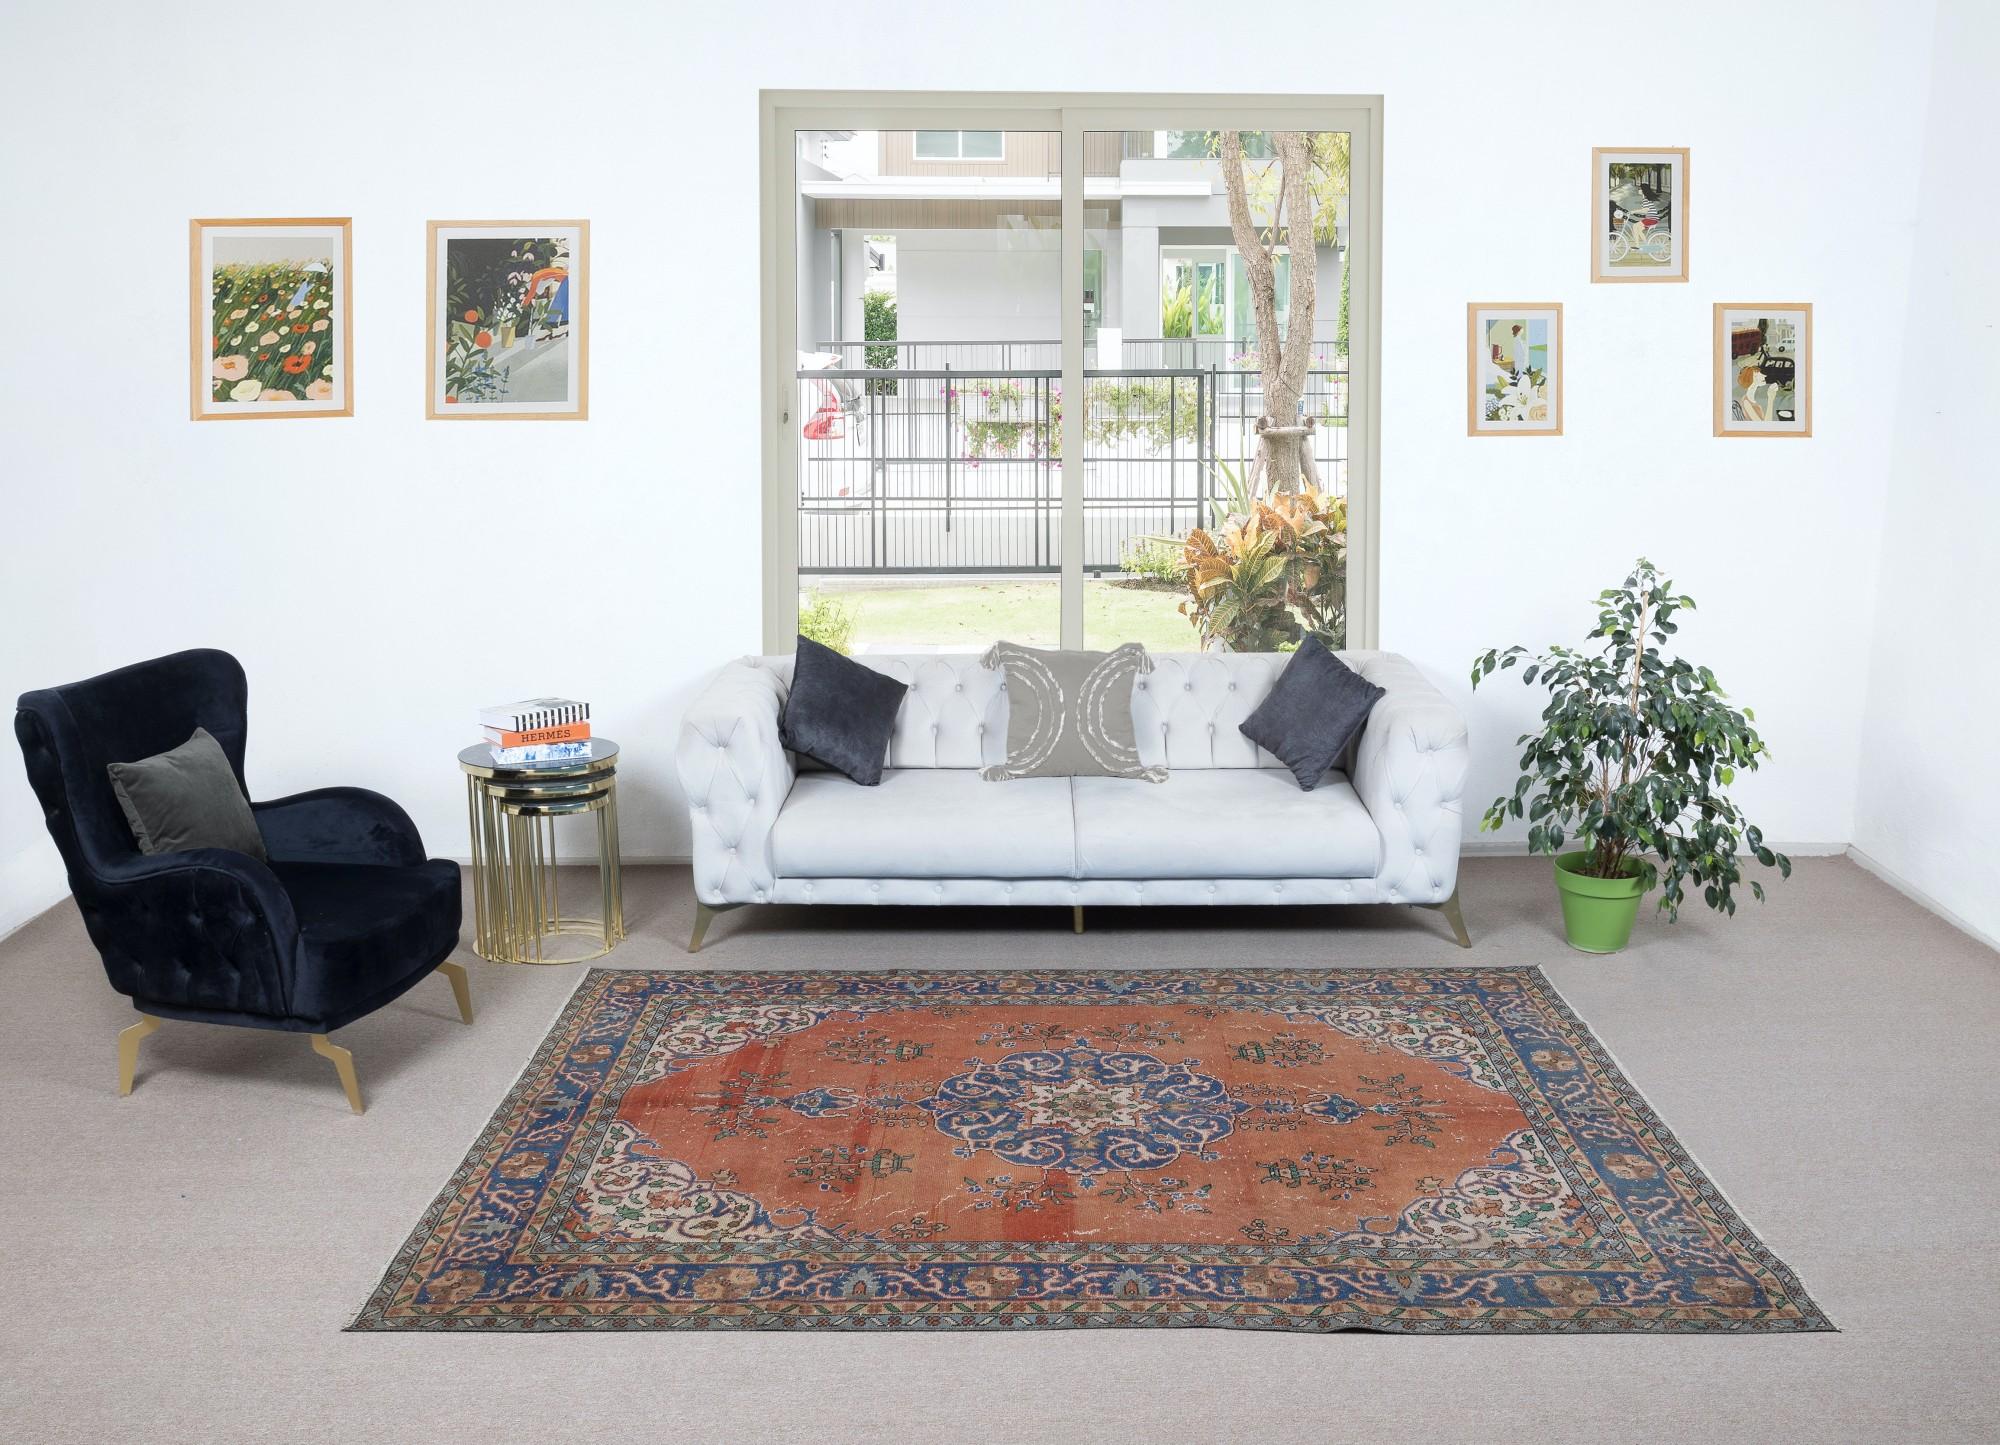 Ein feiner handgeknüpfter türkischer Teppich aus den 1960er Jahren. Der Teppich hat einen gleichmäßigen, niedrigen Wollflor auf Baumwollbasis. Es ist schwer und liegt flach auf dem Boden, in sehr gutem Zustand ohne Probleme. Er wurde professionell